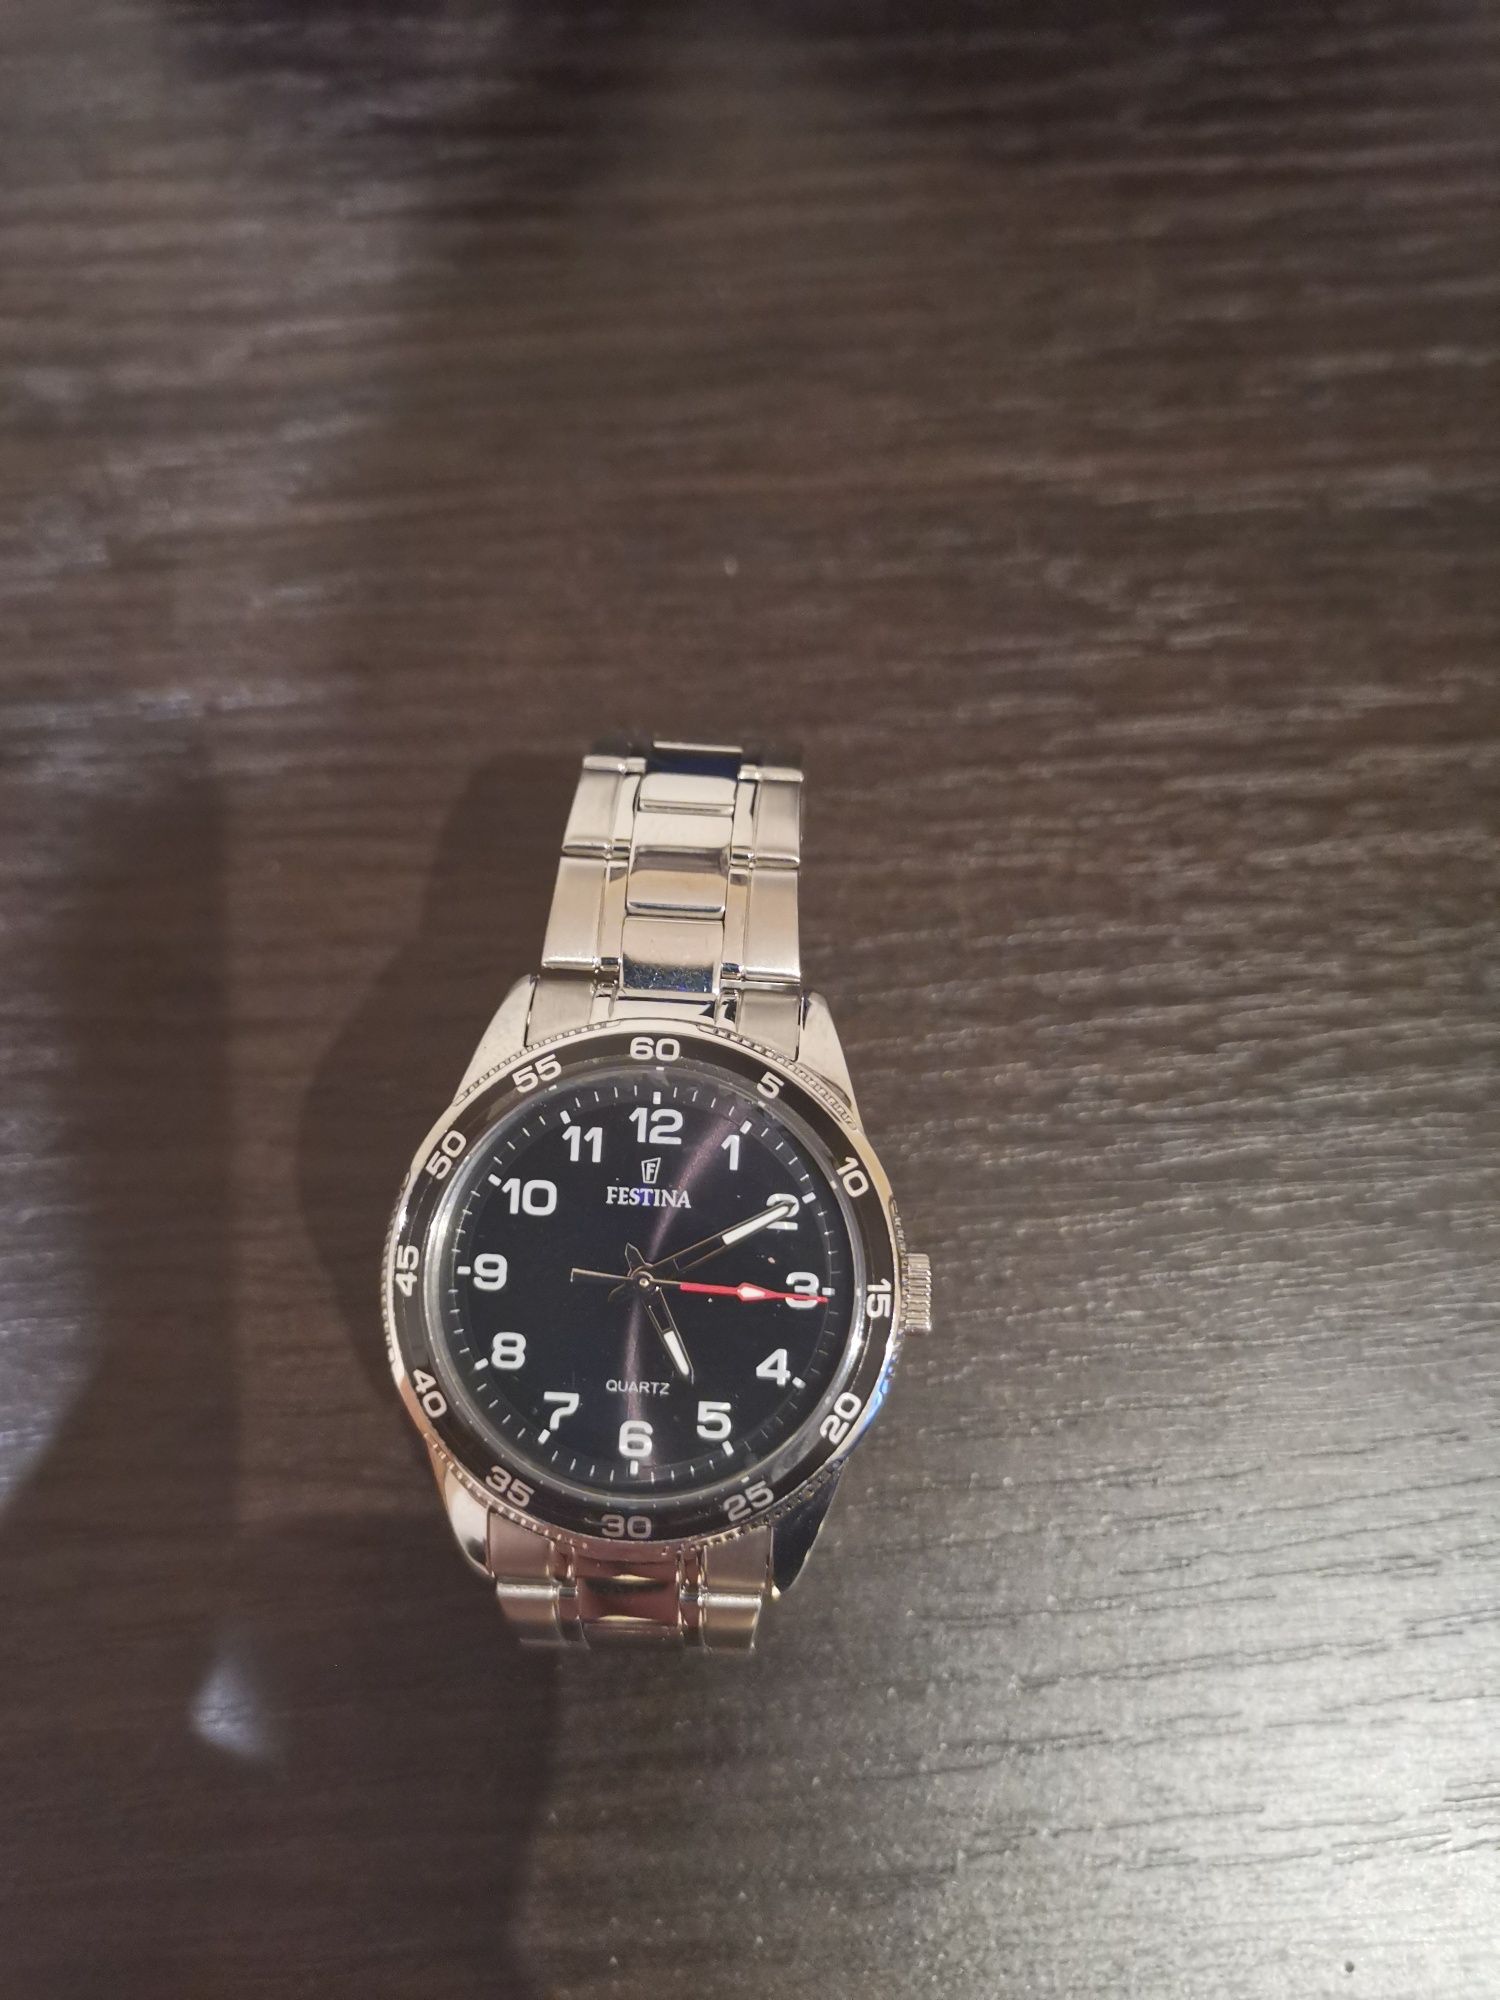 Zegarek Festina F169054 UNISEX analogowy srebrny.